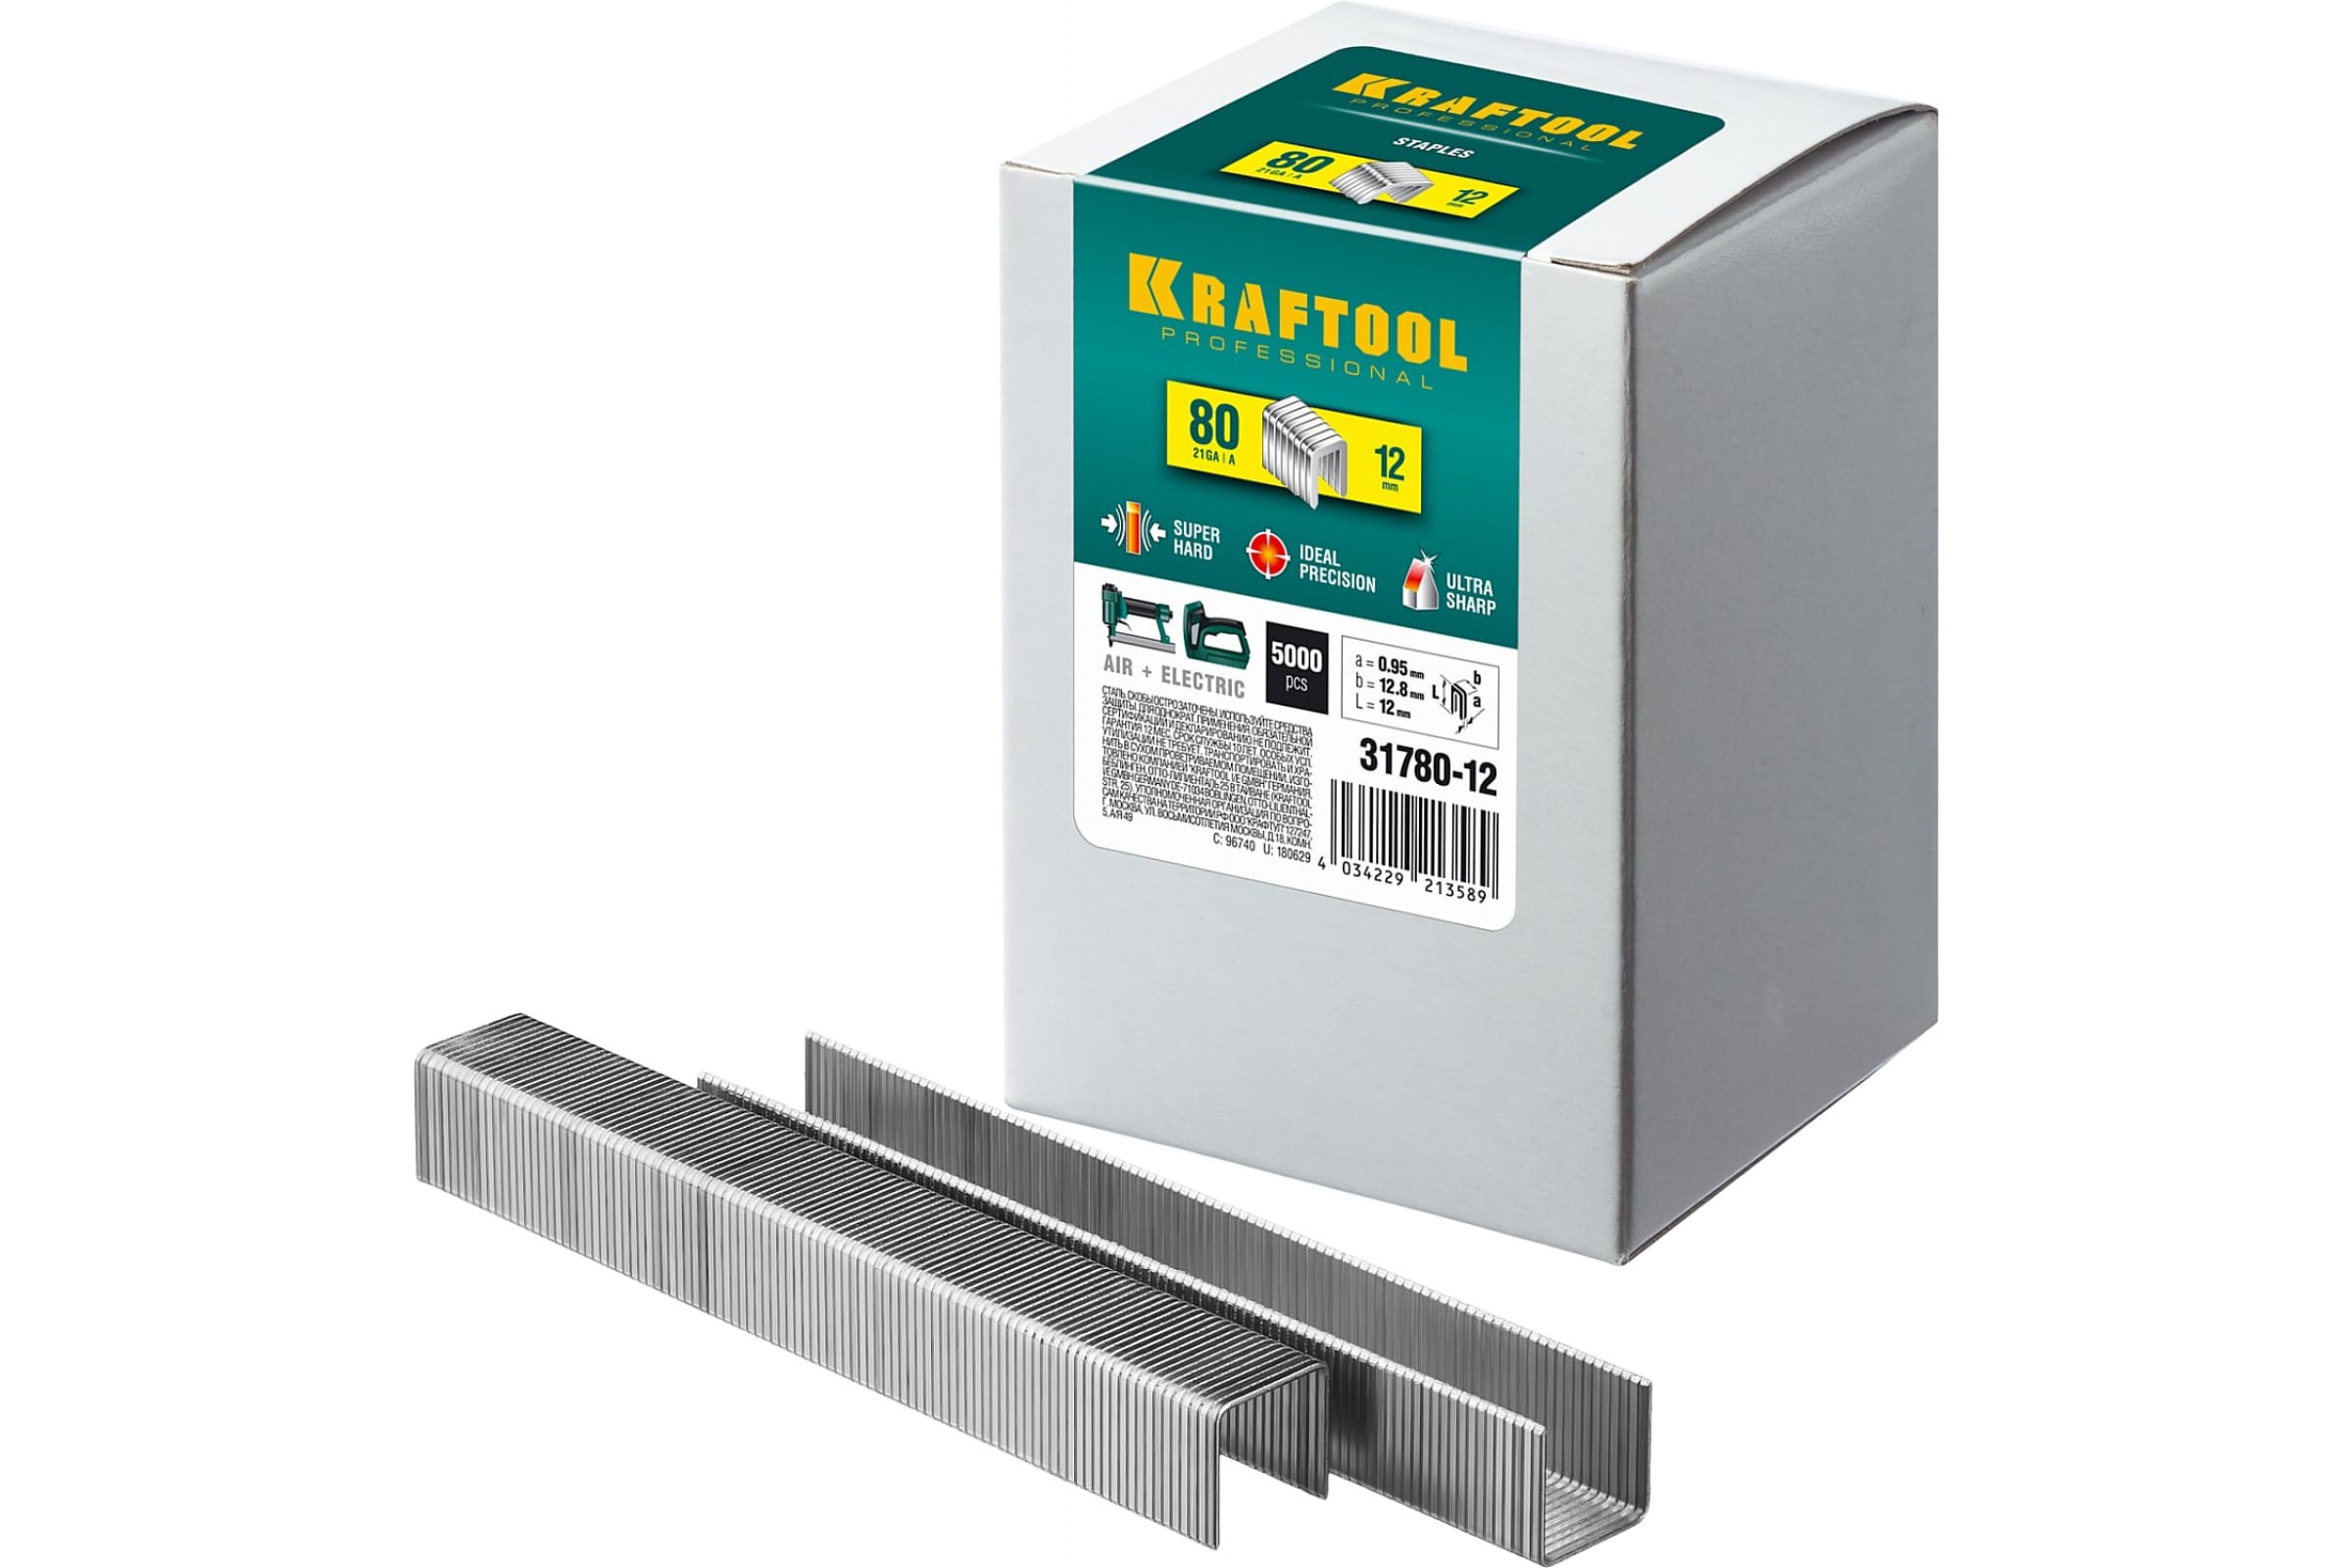 Скобы Kraftool, тип: 80, 1.28 см x 1.2 см (31780-12) 5000 шт